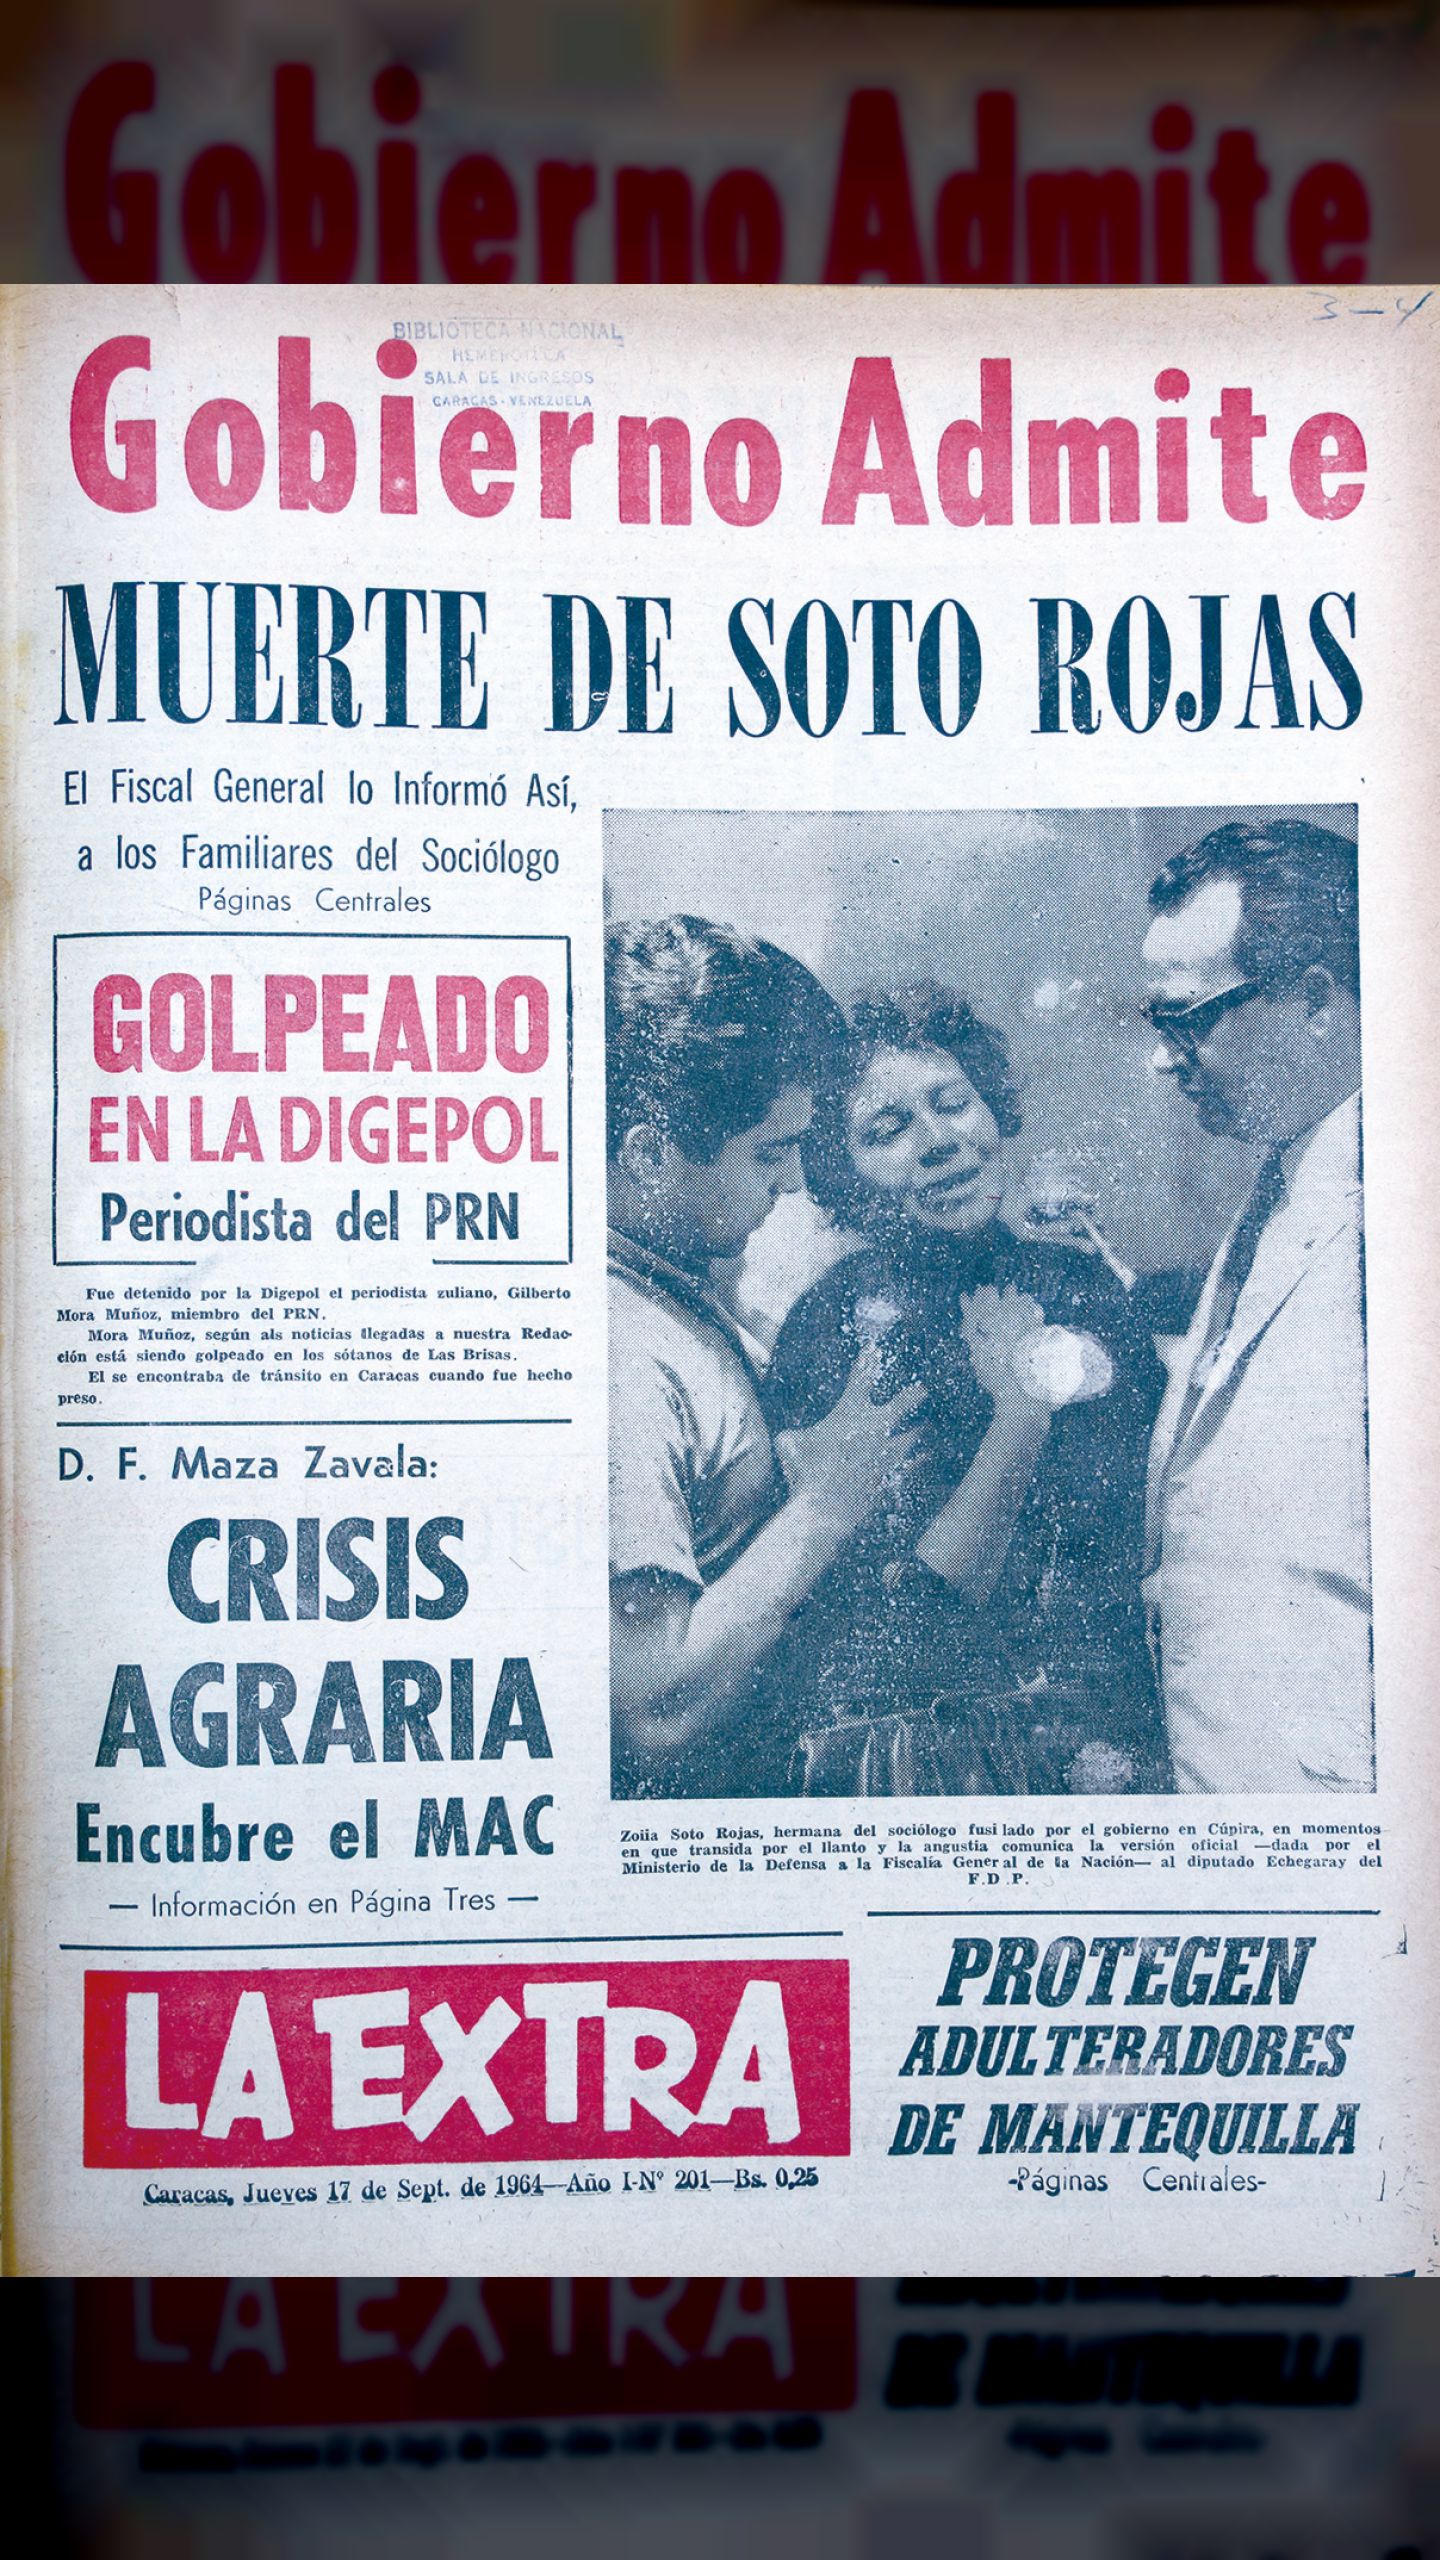 Gobierno admite muerte de Soto Rojas (La Extra, 17 de septiembre de 1964)